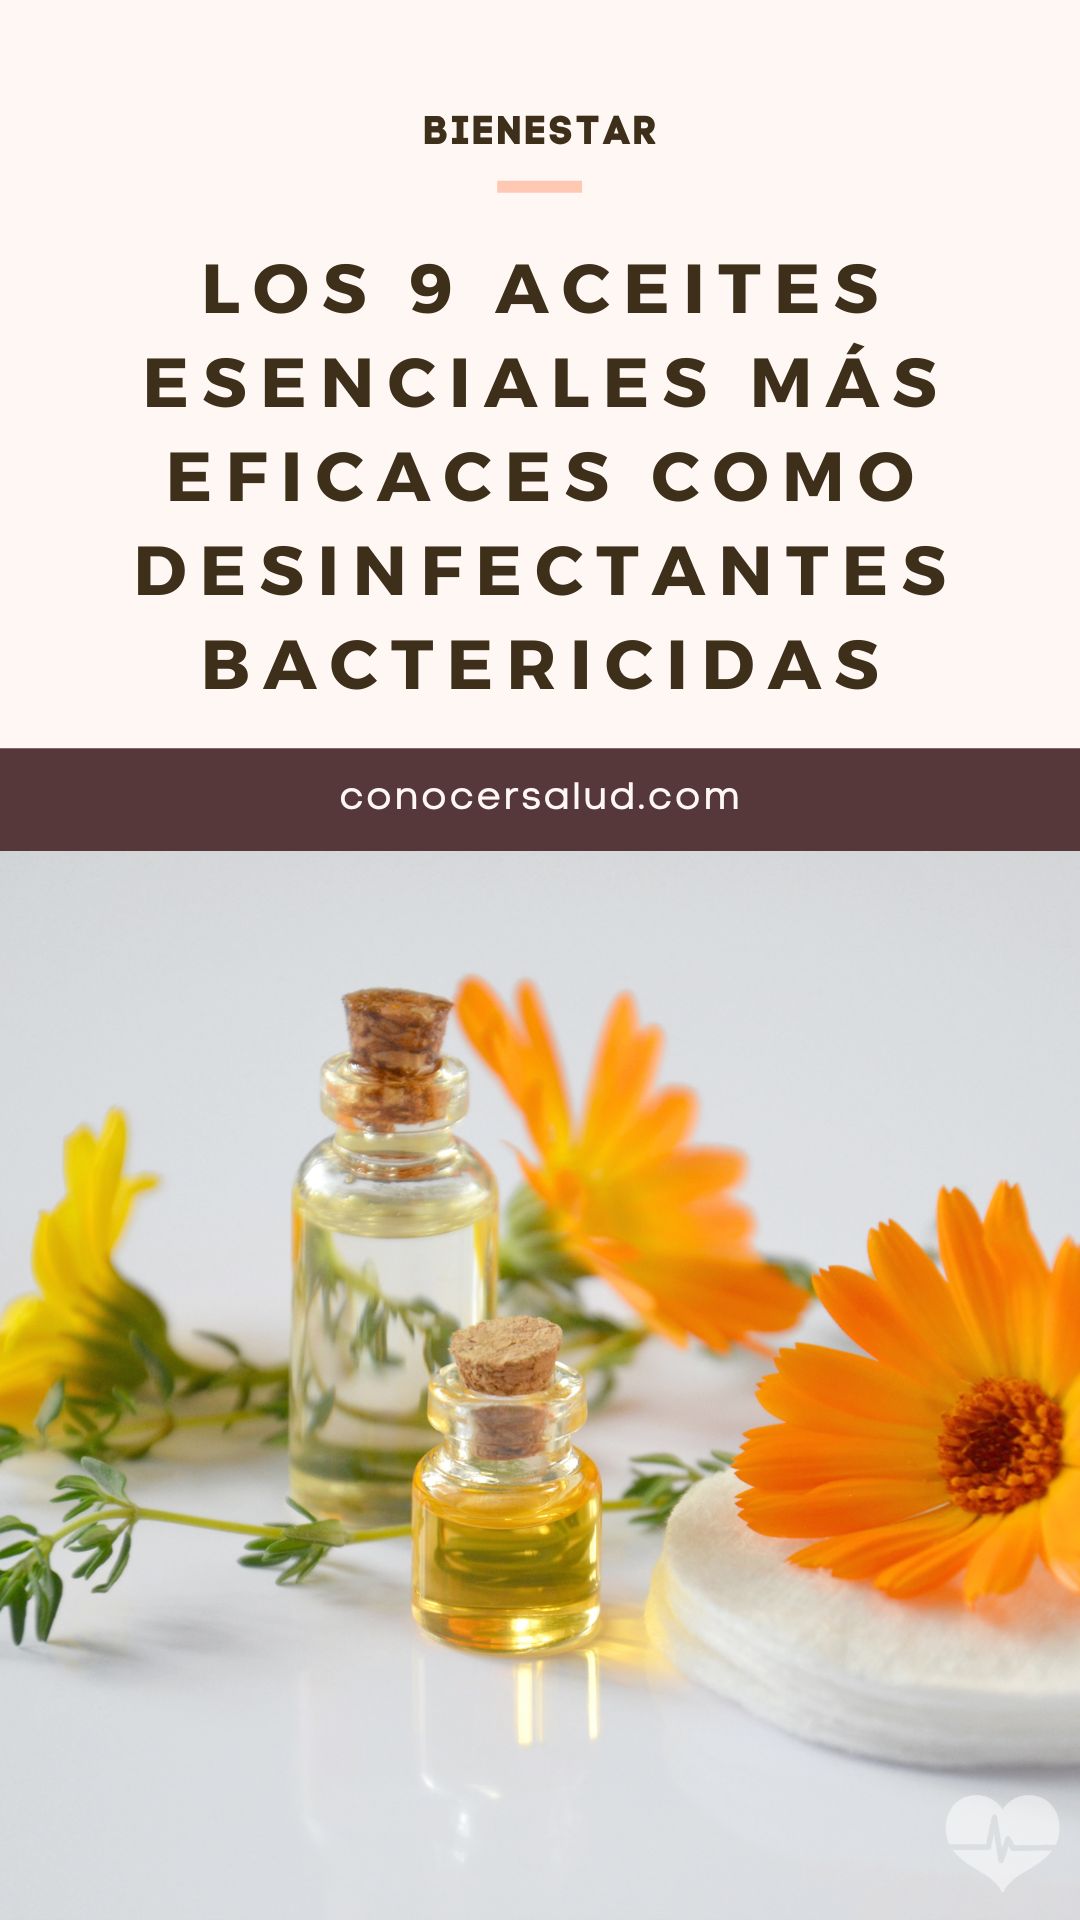 Los 9 aceites esenciales más eficaces como desinfectantes bactericidas